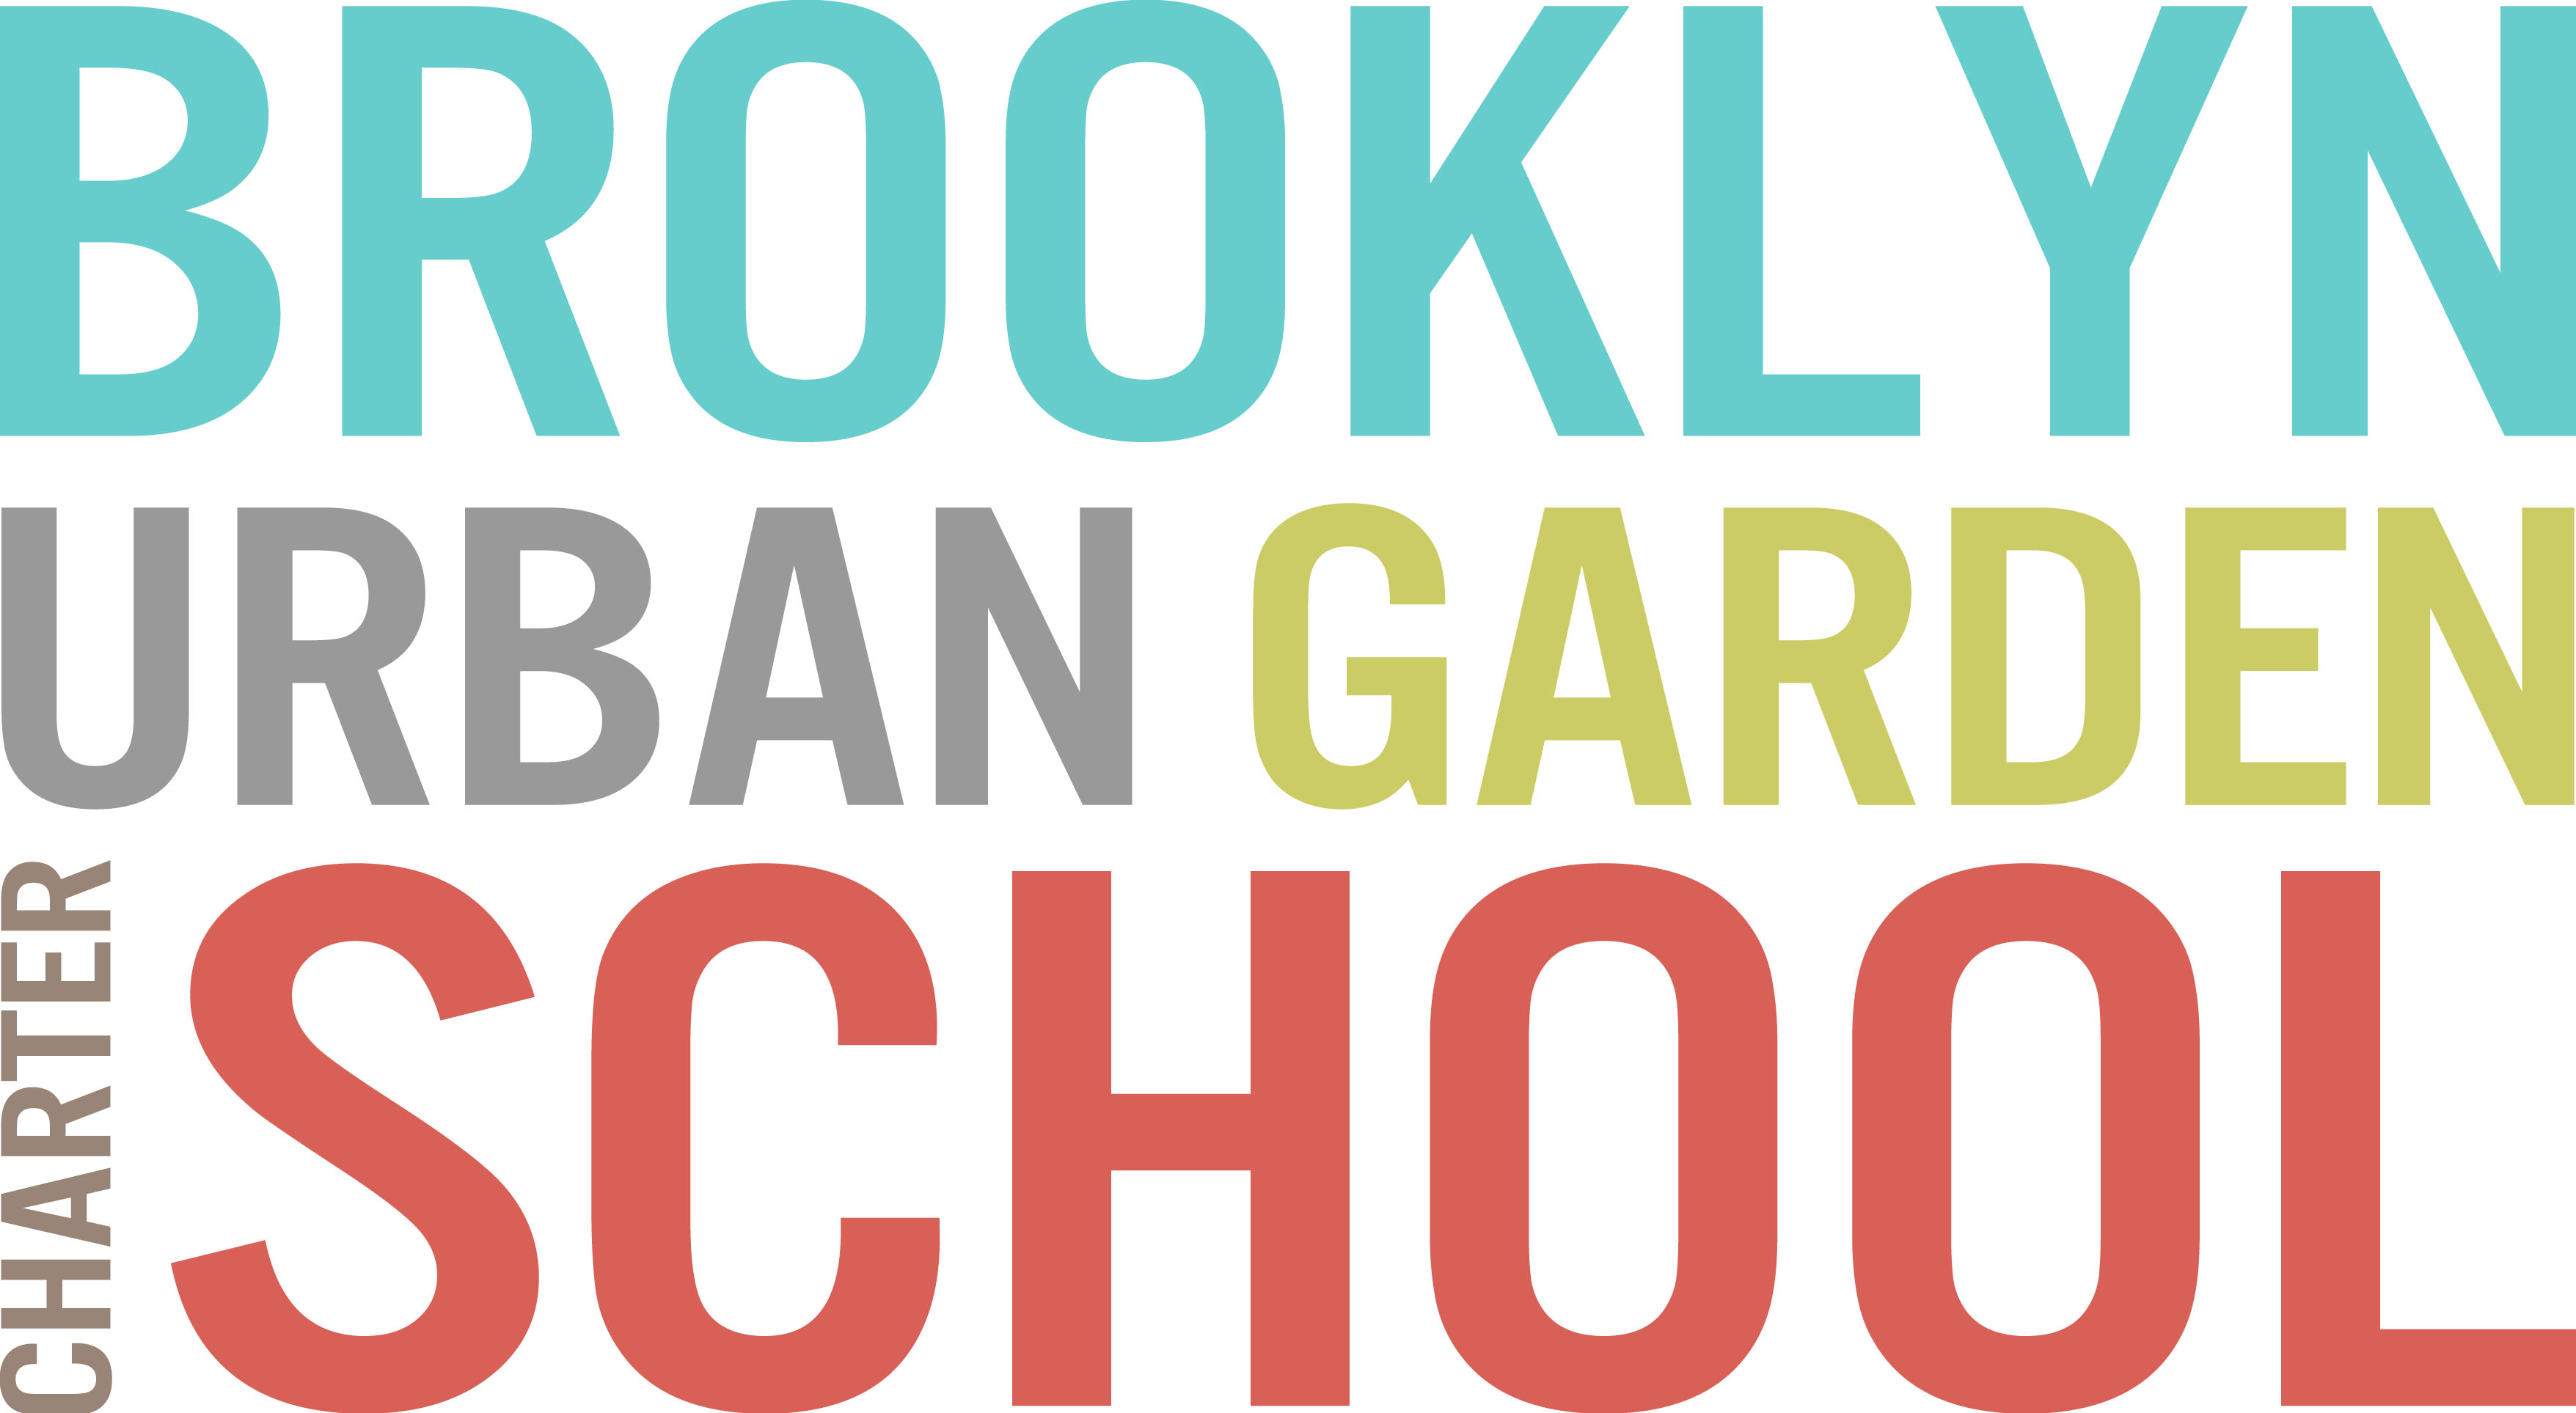 Brooklyn Urban Garden Charter School